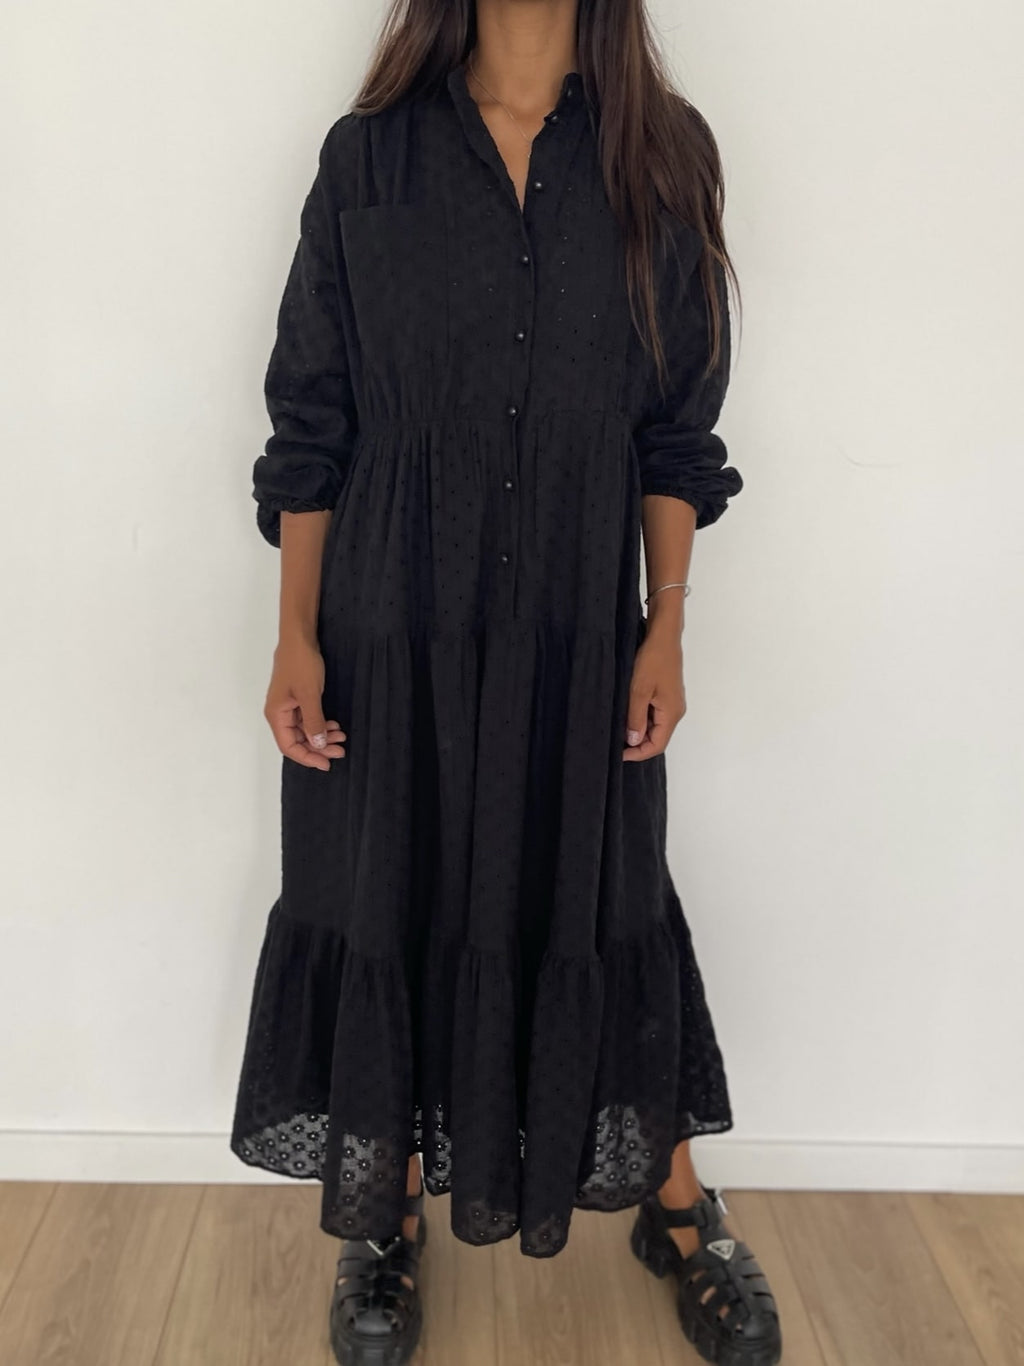 Robe bohème noire en coton brodé avec coupe confortable